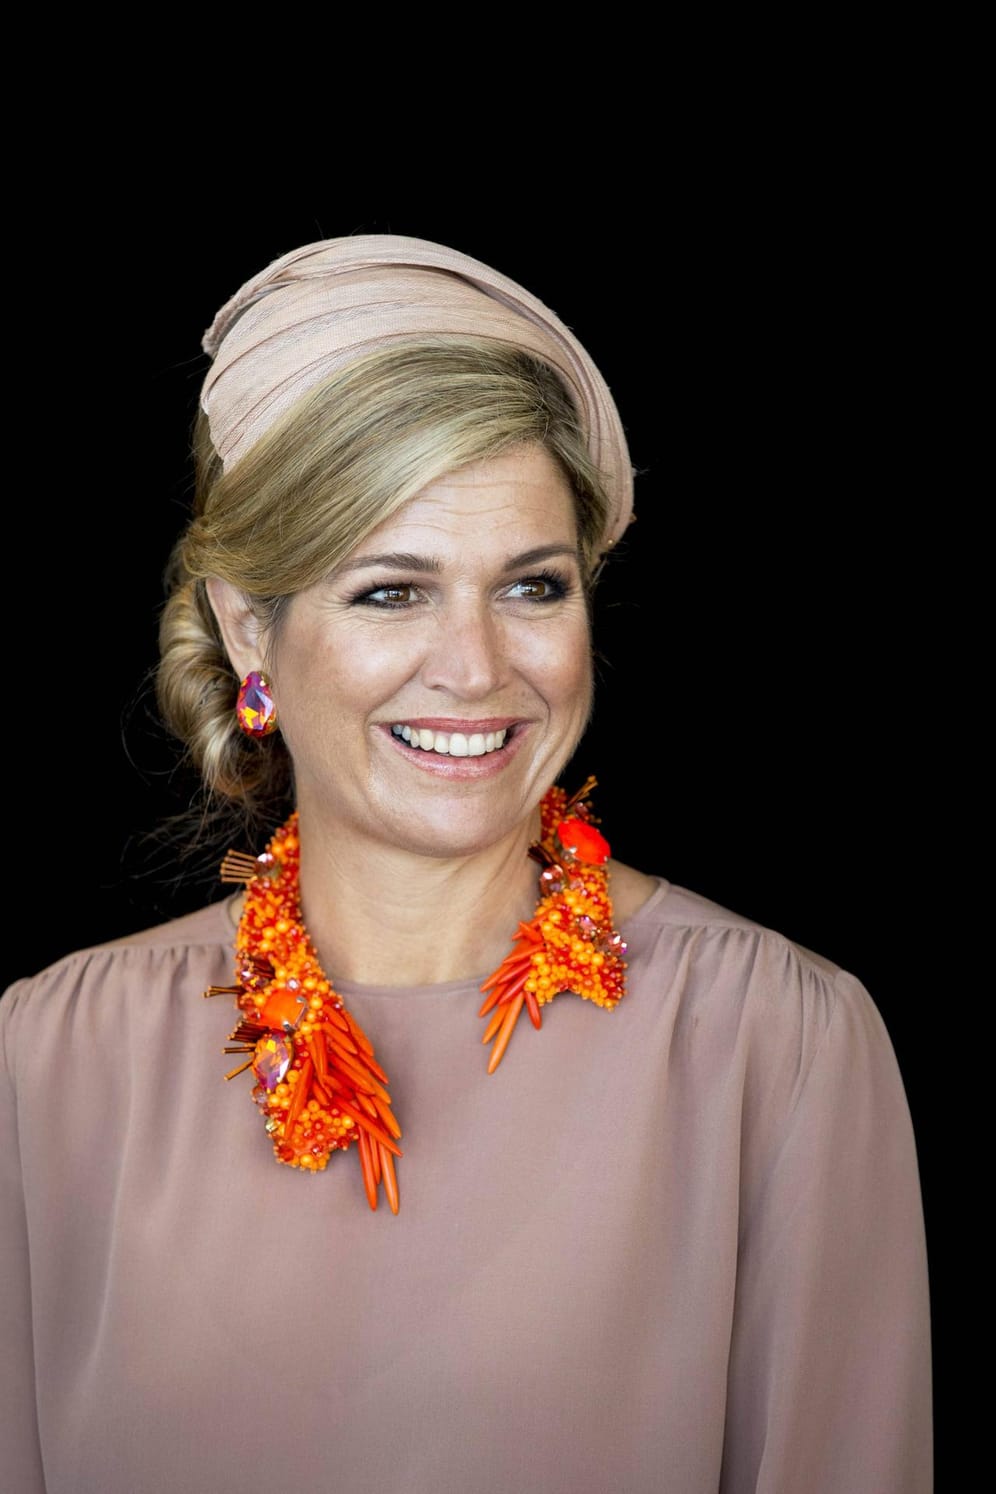 Diese Kette kennen wir doch: Beim Staatsbesuch in Sydney zeigte sich Königin Máxima mit diesem orangefarbenen Modell.